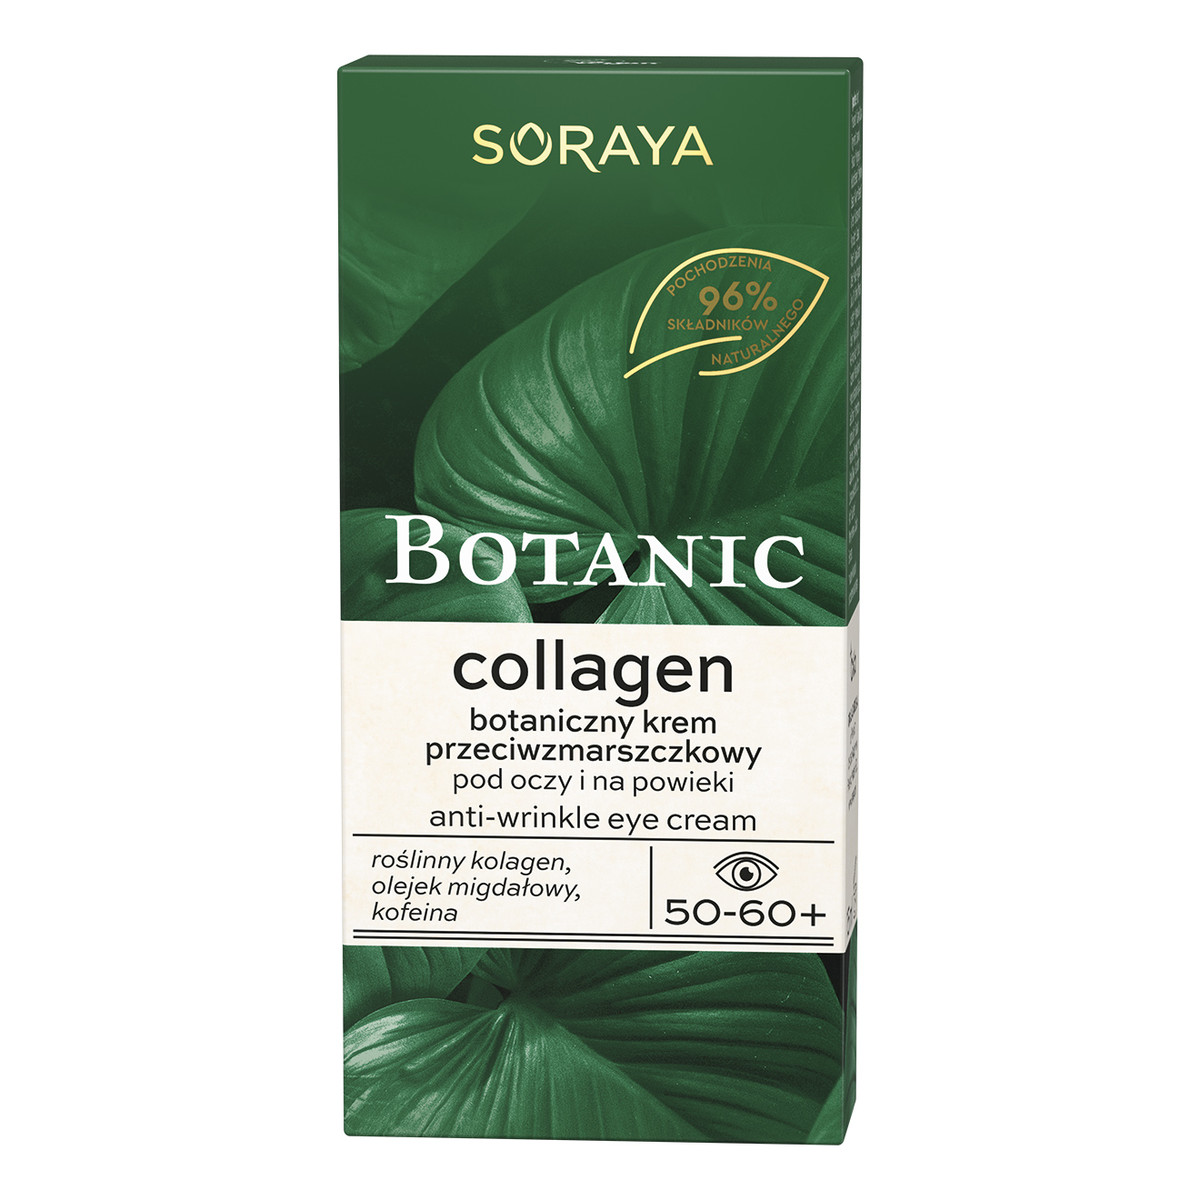 Soraya Botanic Collagen 50-60+ botaniczny Krem przeciwzmarszczkowy pod oczy i na powieki 15ml